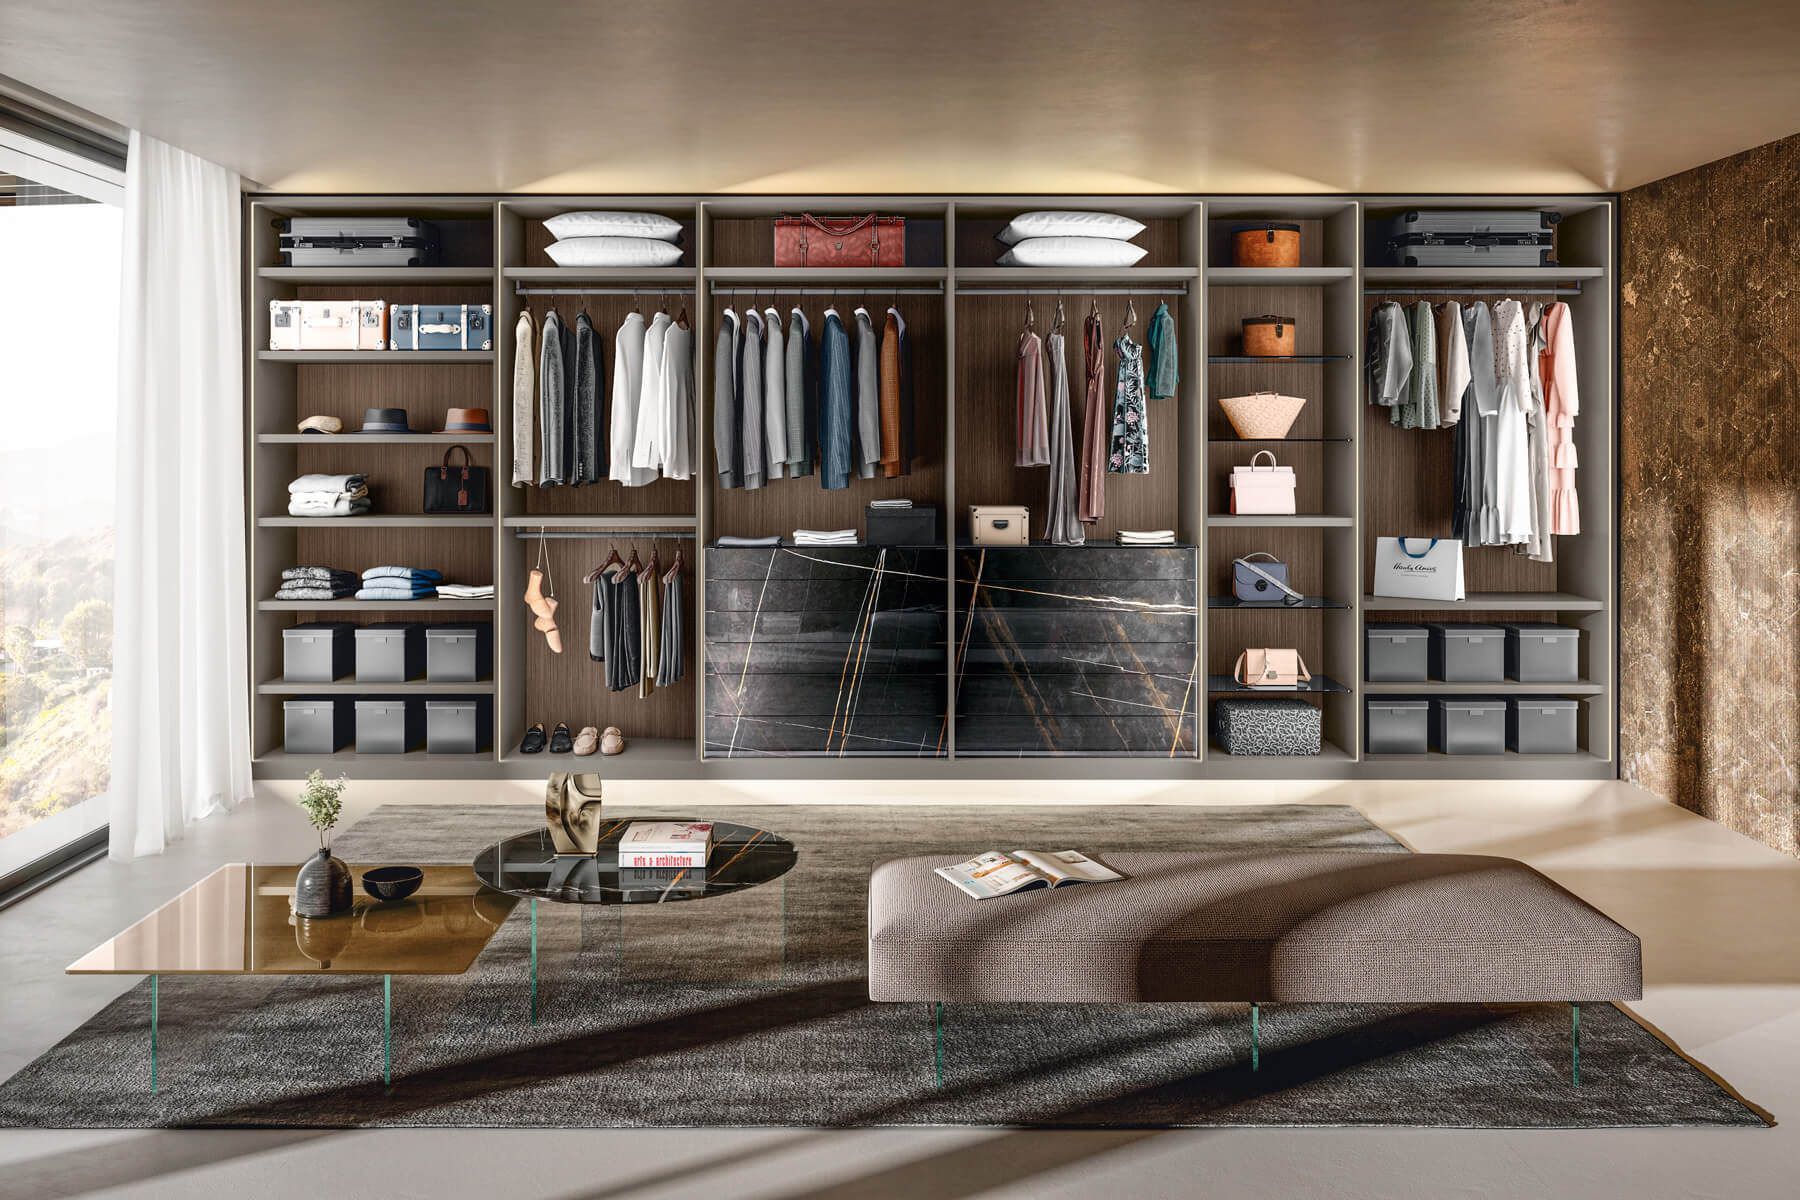 Thiết kế tủ quần áo thông minh hiện đại đụng trần tối ưu không gian lưu trữ đồ đạc trong nhà